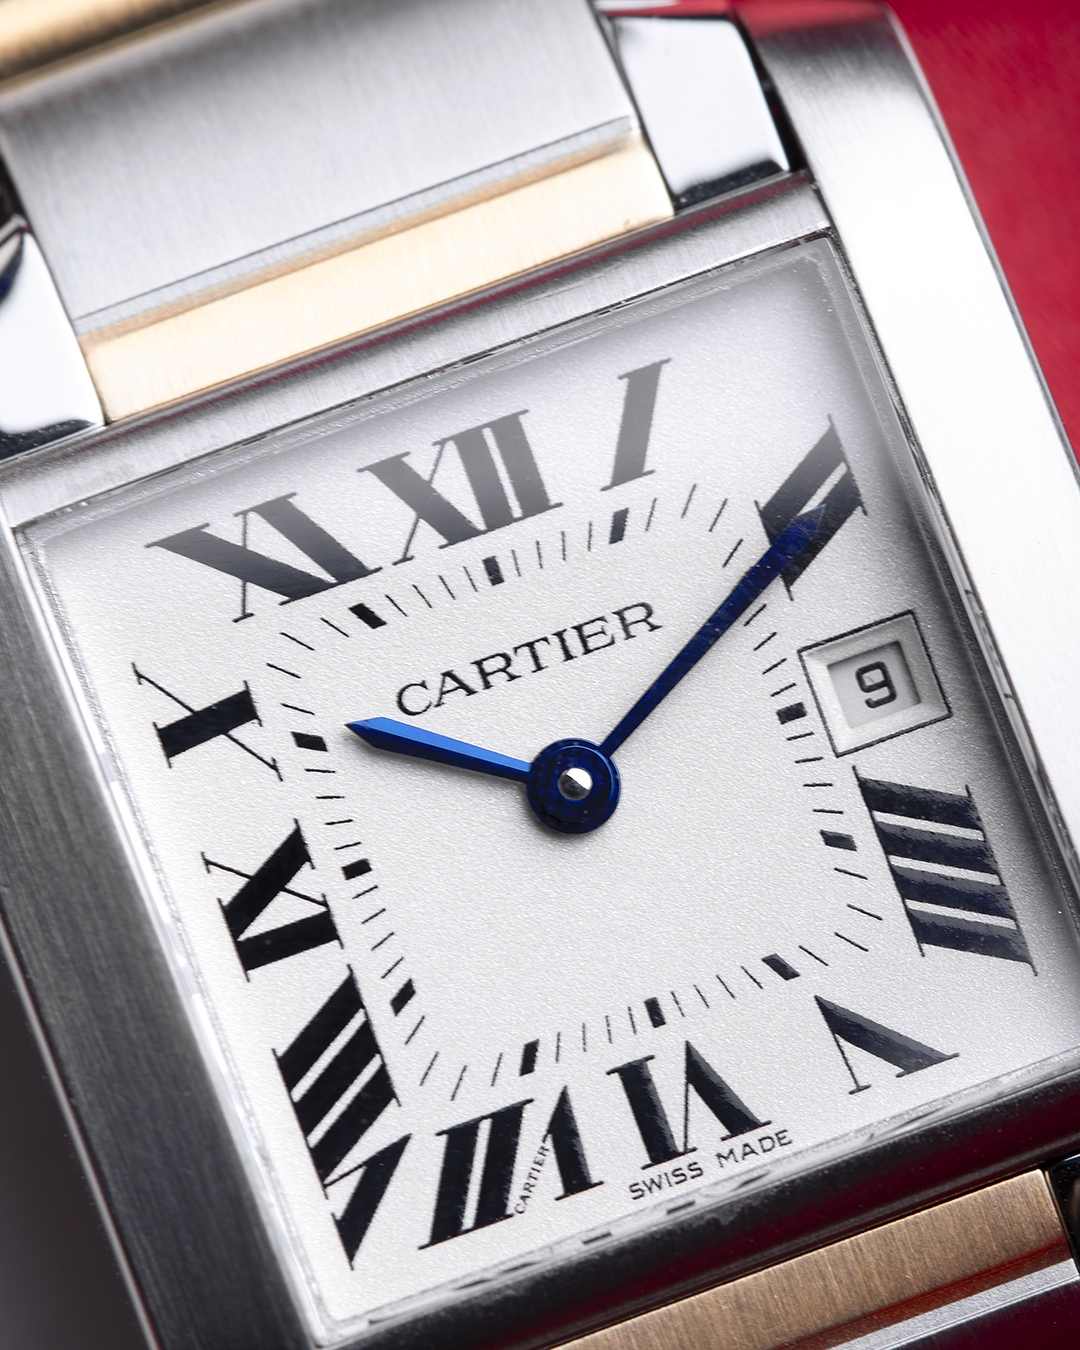 Cartier, ou le luxe à la française